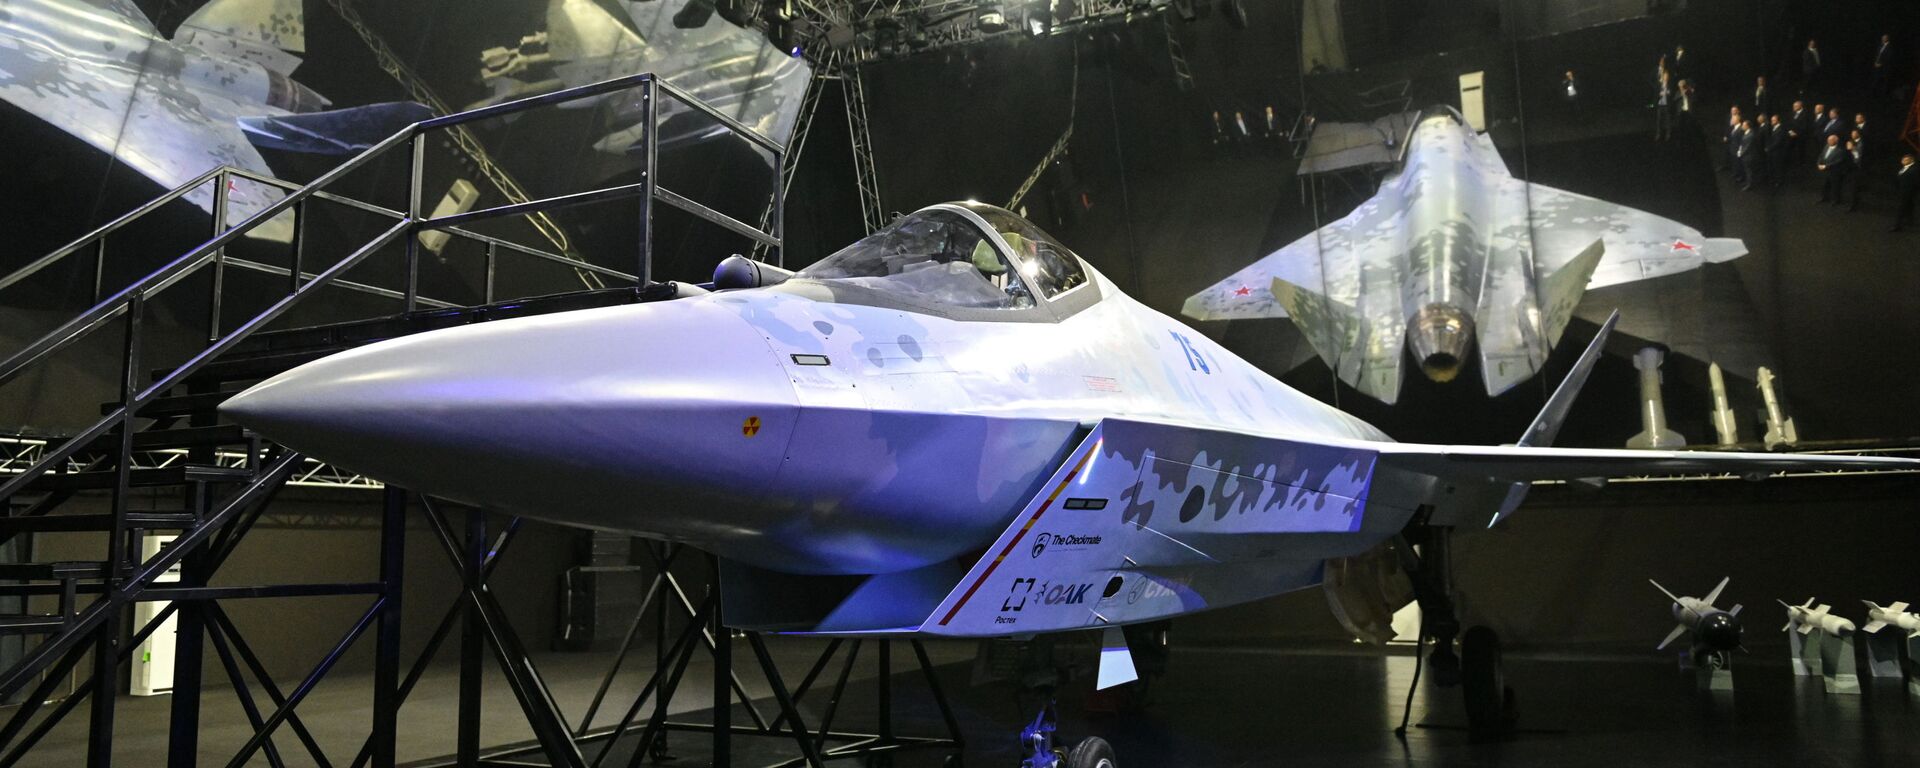 مقاتلة سوخوي تشيك ميت (مات الشاه) في معرض الطيران والفضاء الدولي ماكس 2021 في جوكوفسكي، ضواحي موسكو، روسيا 20 يوليو 2021 - سبوتنيك عربي, 1920, 20.07.2021